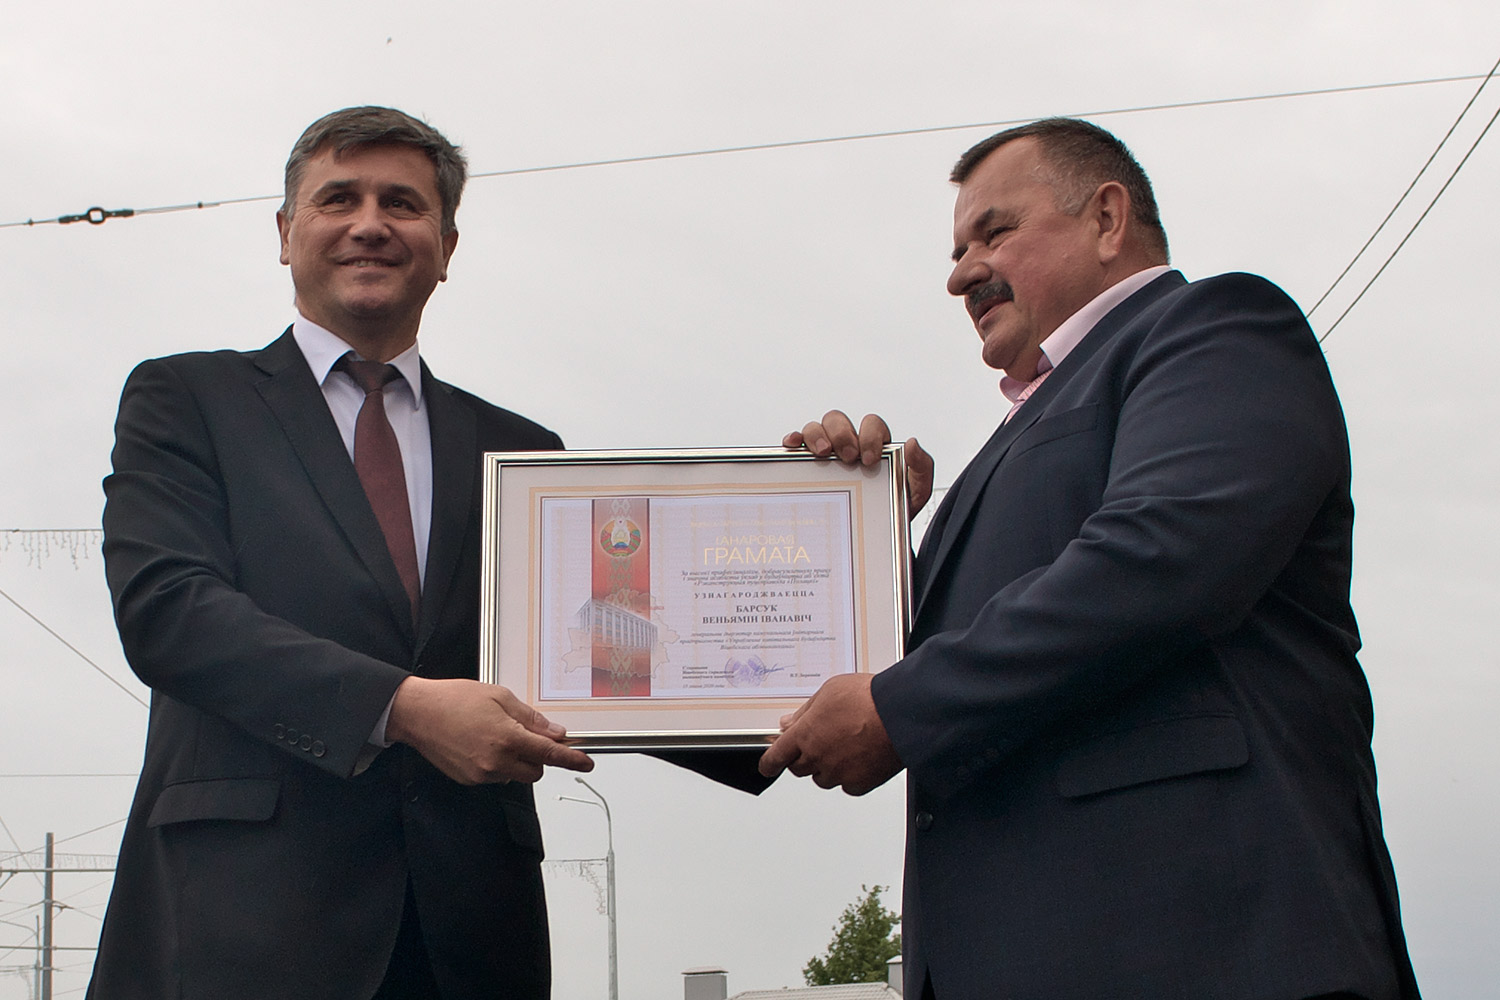 Веньямин Барсуков получает грамоту из рук мэра Вадима Зарянкина. Фото Сергея Серебро